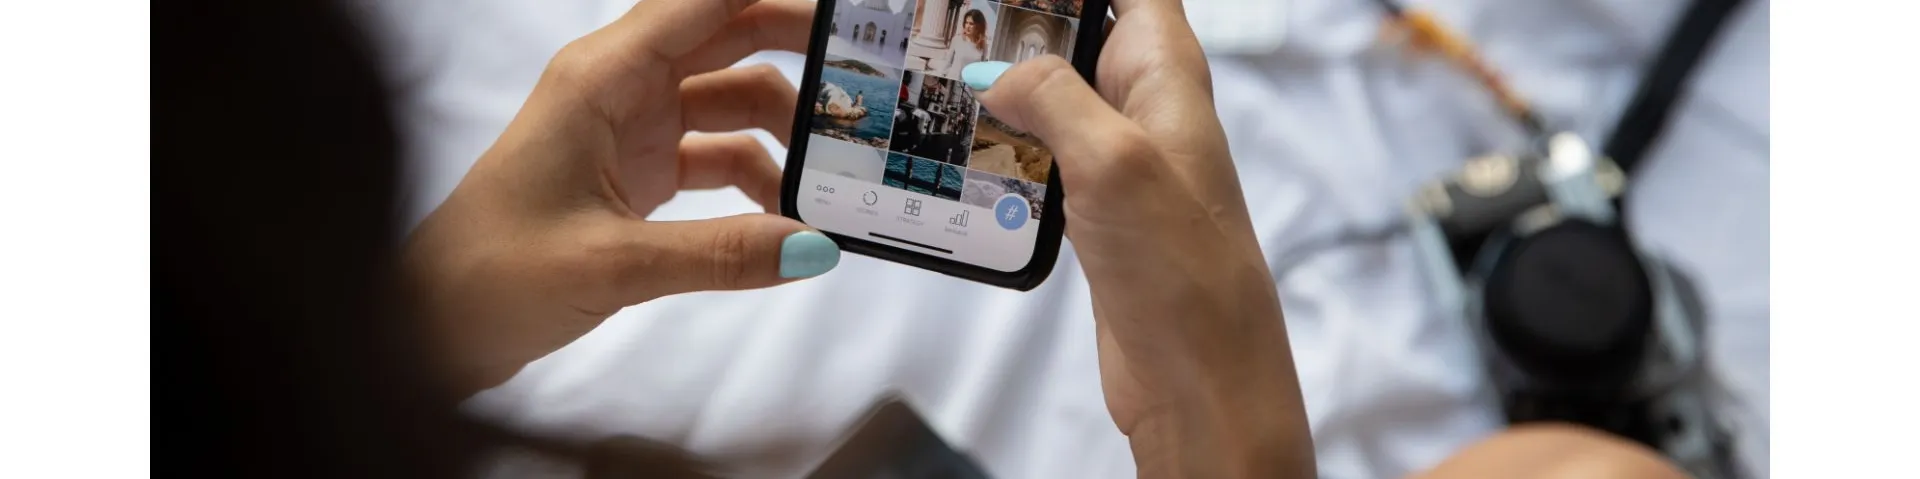 O Turista 4.0: Conectado, Personalizado e Experiente - A Era Digital no Mundo das Viagens